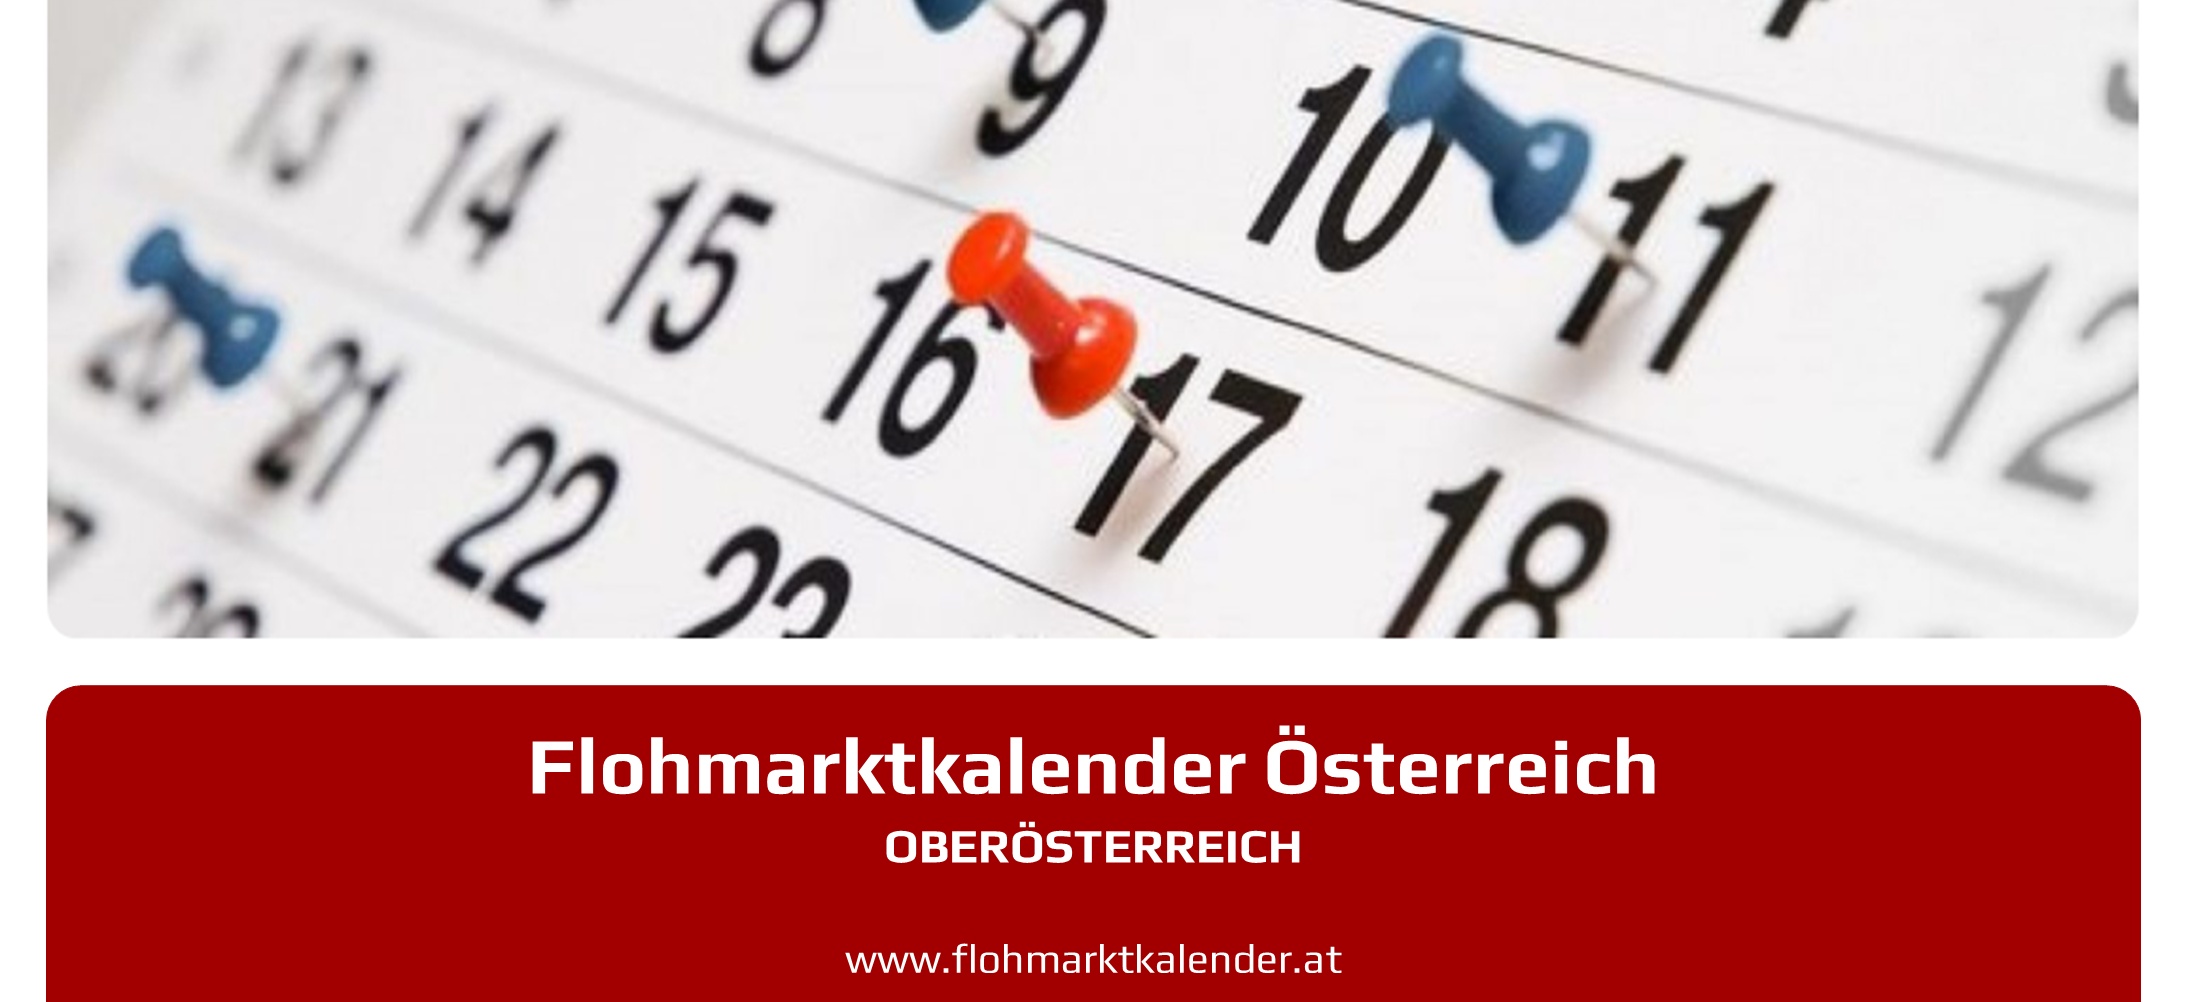 Flohmarktkalender Oberoesterreich 17